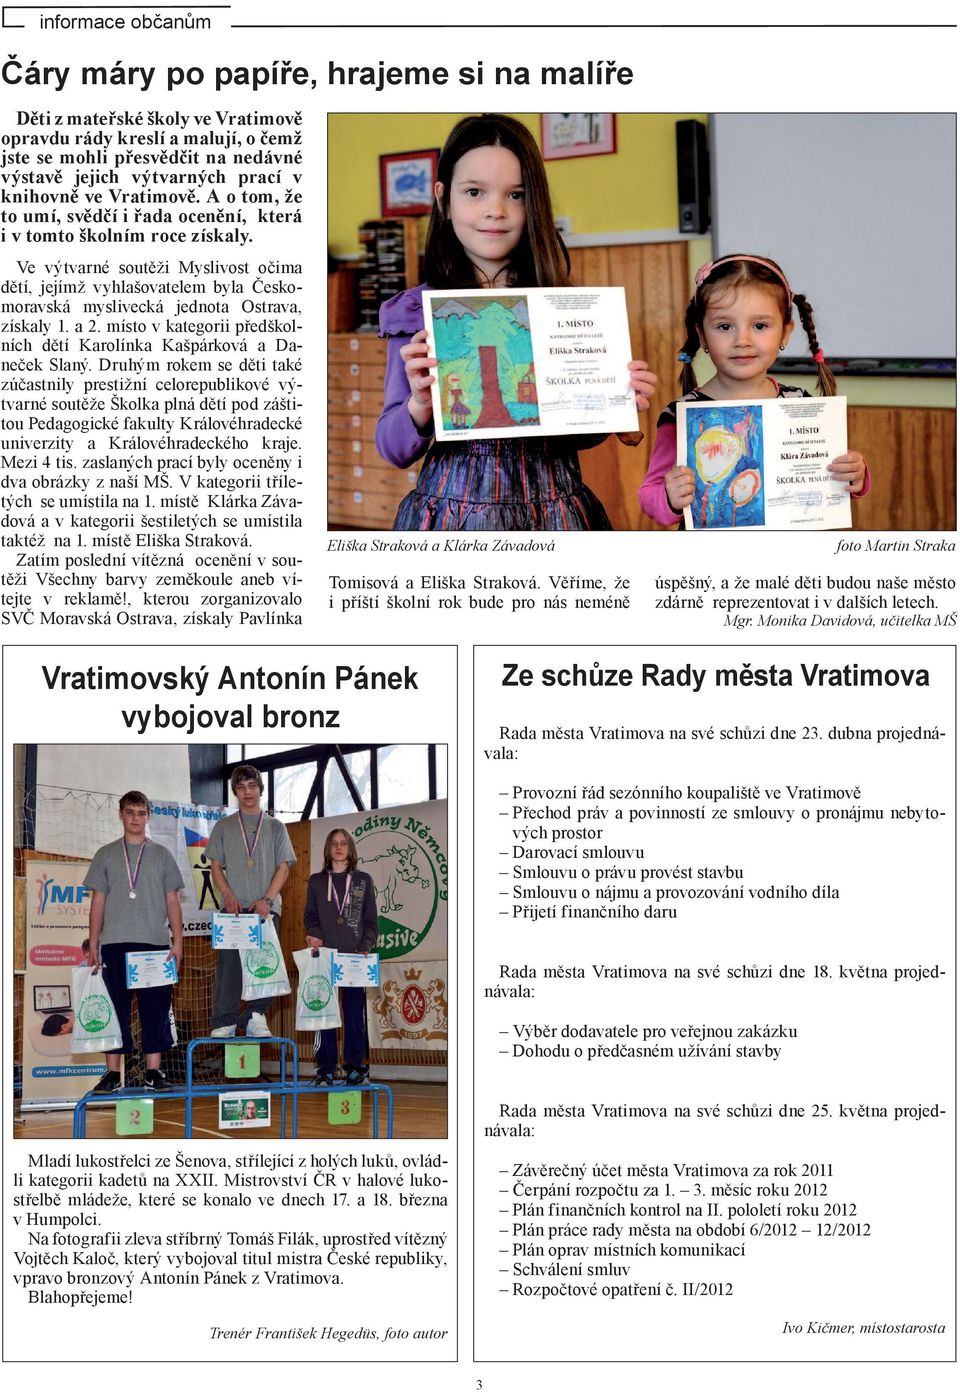 Ve výtvarné soutěži Myslivost očima dětí, jejímž vyhlašovatelem byla Českomoravská myslivecká jednota Ostrava, získaly 1. a 2. místo v kategorii předškolních dětí Karolínka Kašpárková a Daneček Slaný.